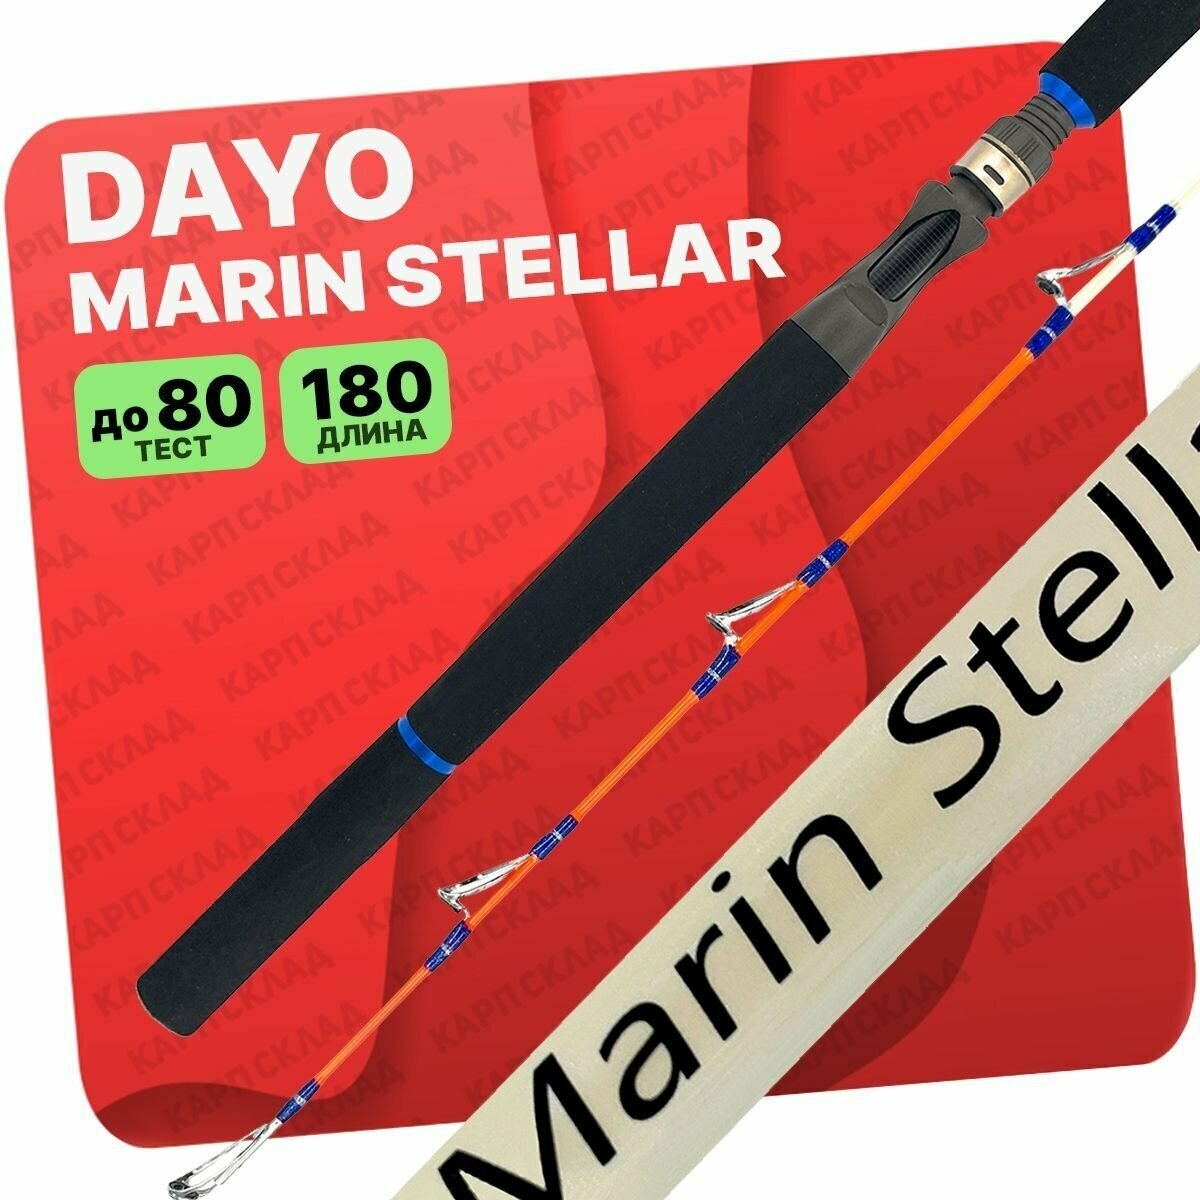 Спиннинг штекерный DAYO MARIN STELLAR для троллинга с верхним тестом 80 грамм, 180 см